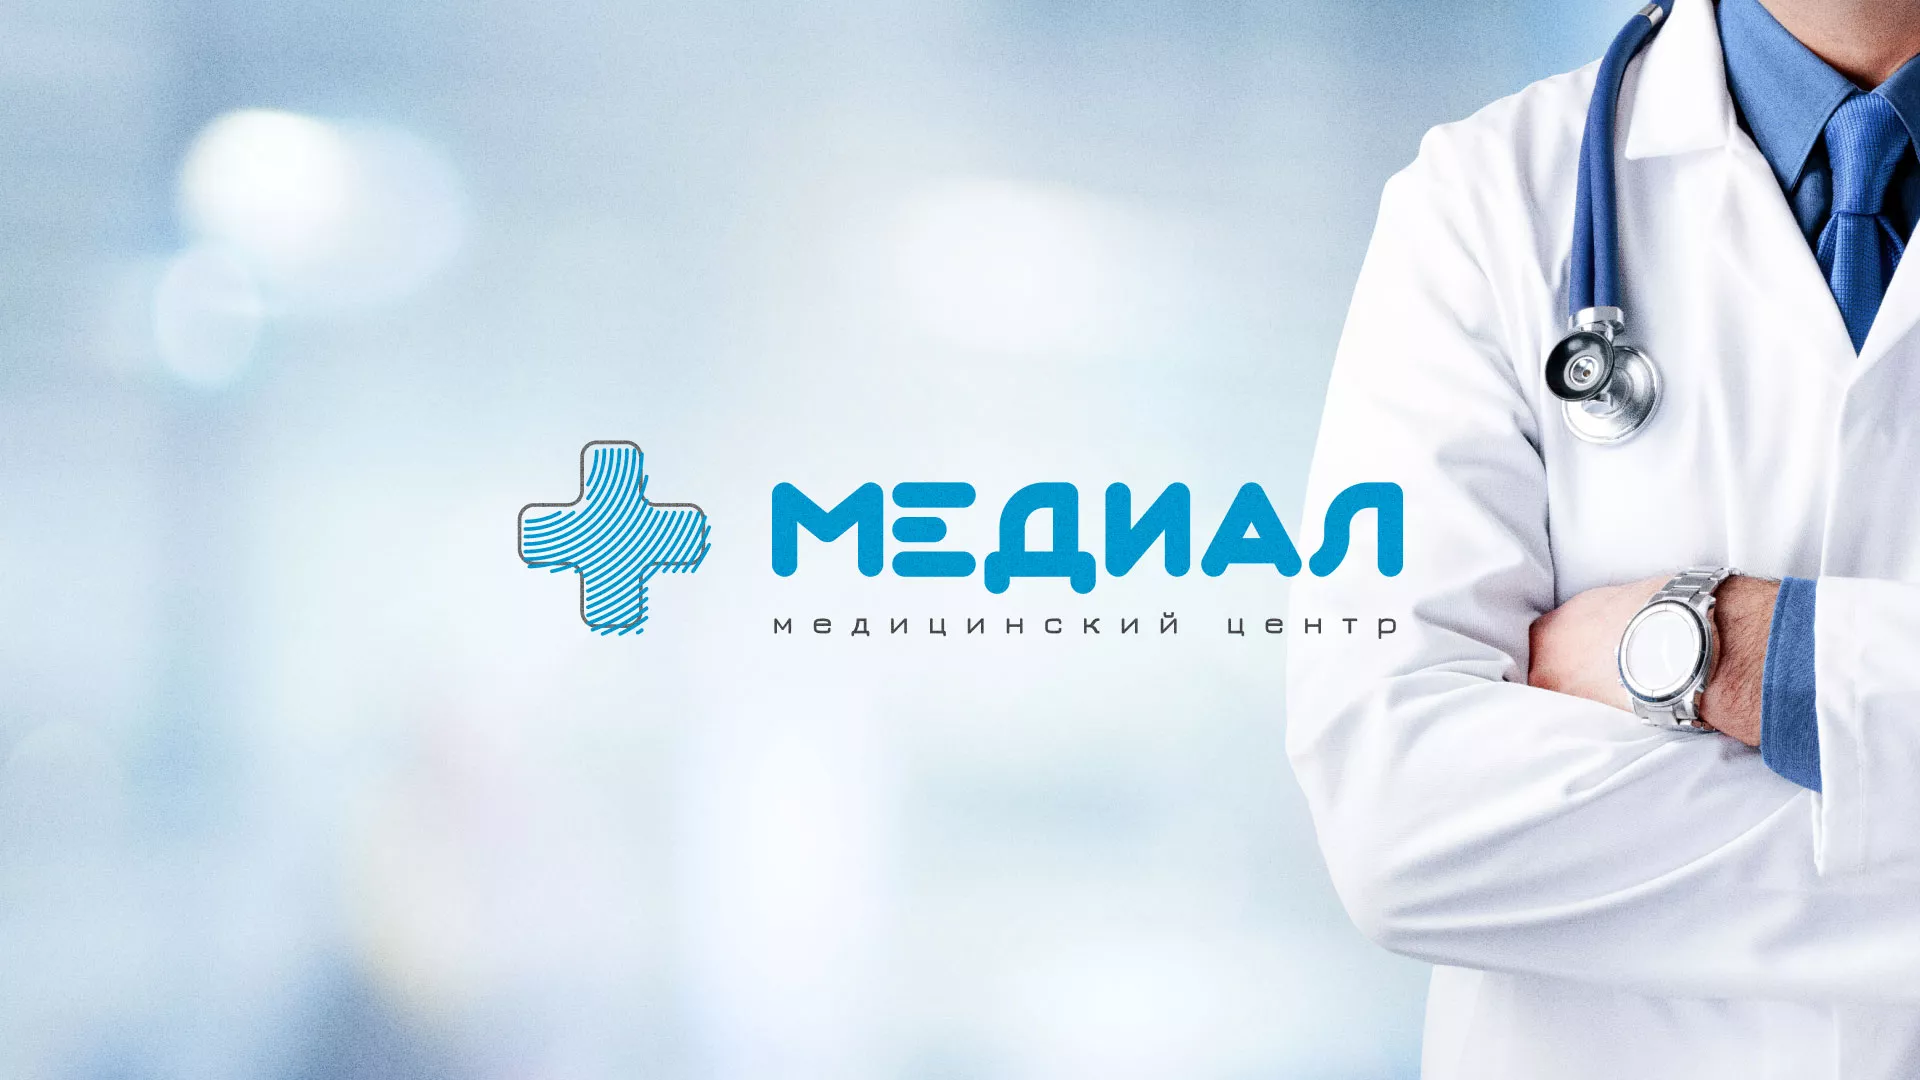 Создание сайта для медицинского центра «Медиал» в Магадане